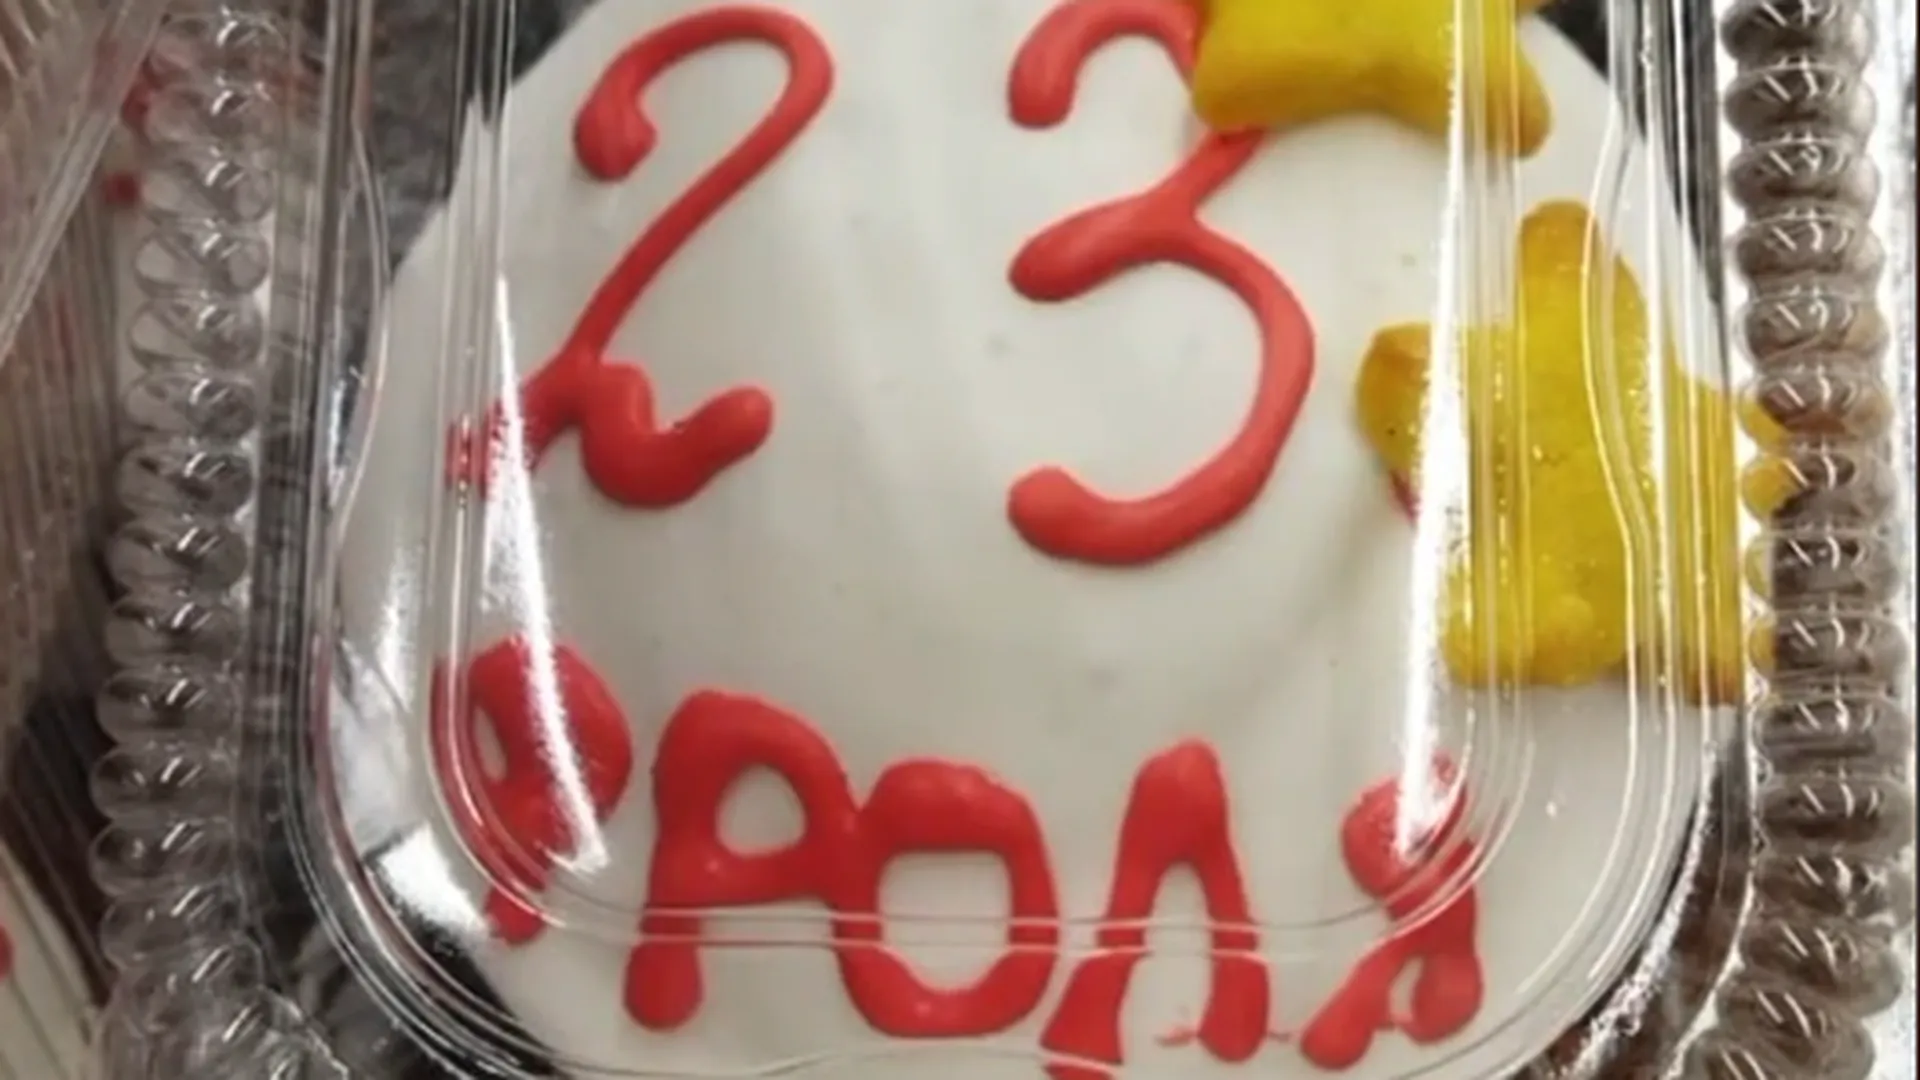 «Кто такие фроли и почему их 23?» Праздничные пирожные со странными надписями заметили в супермаркете Красногорска